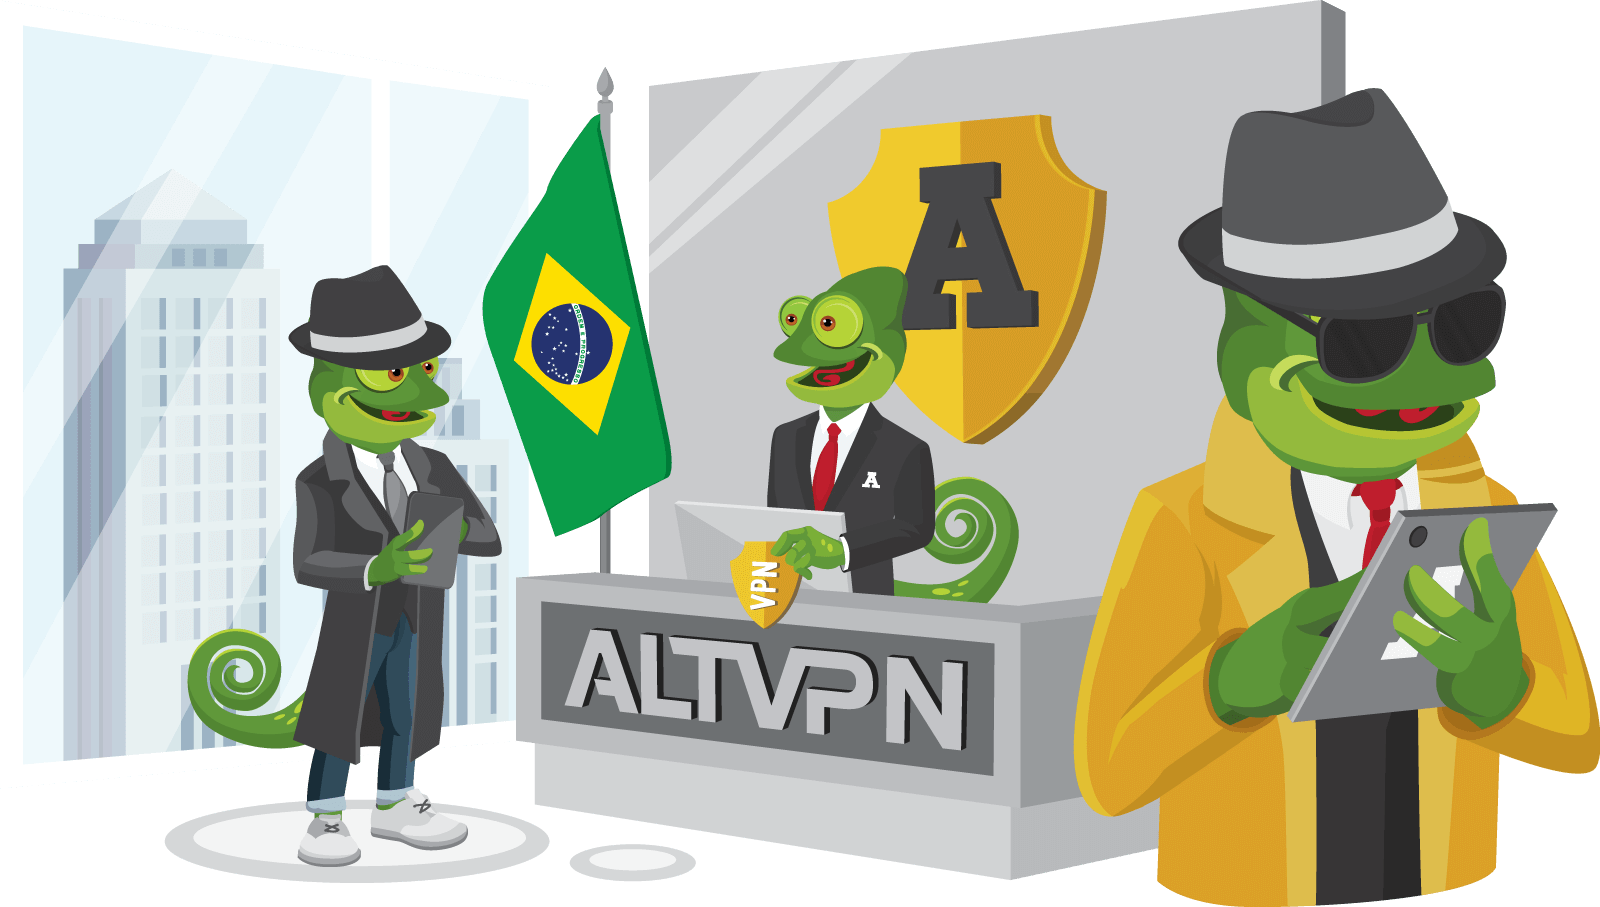 Buy VPN - ALTVPN